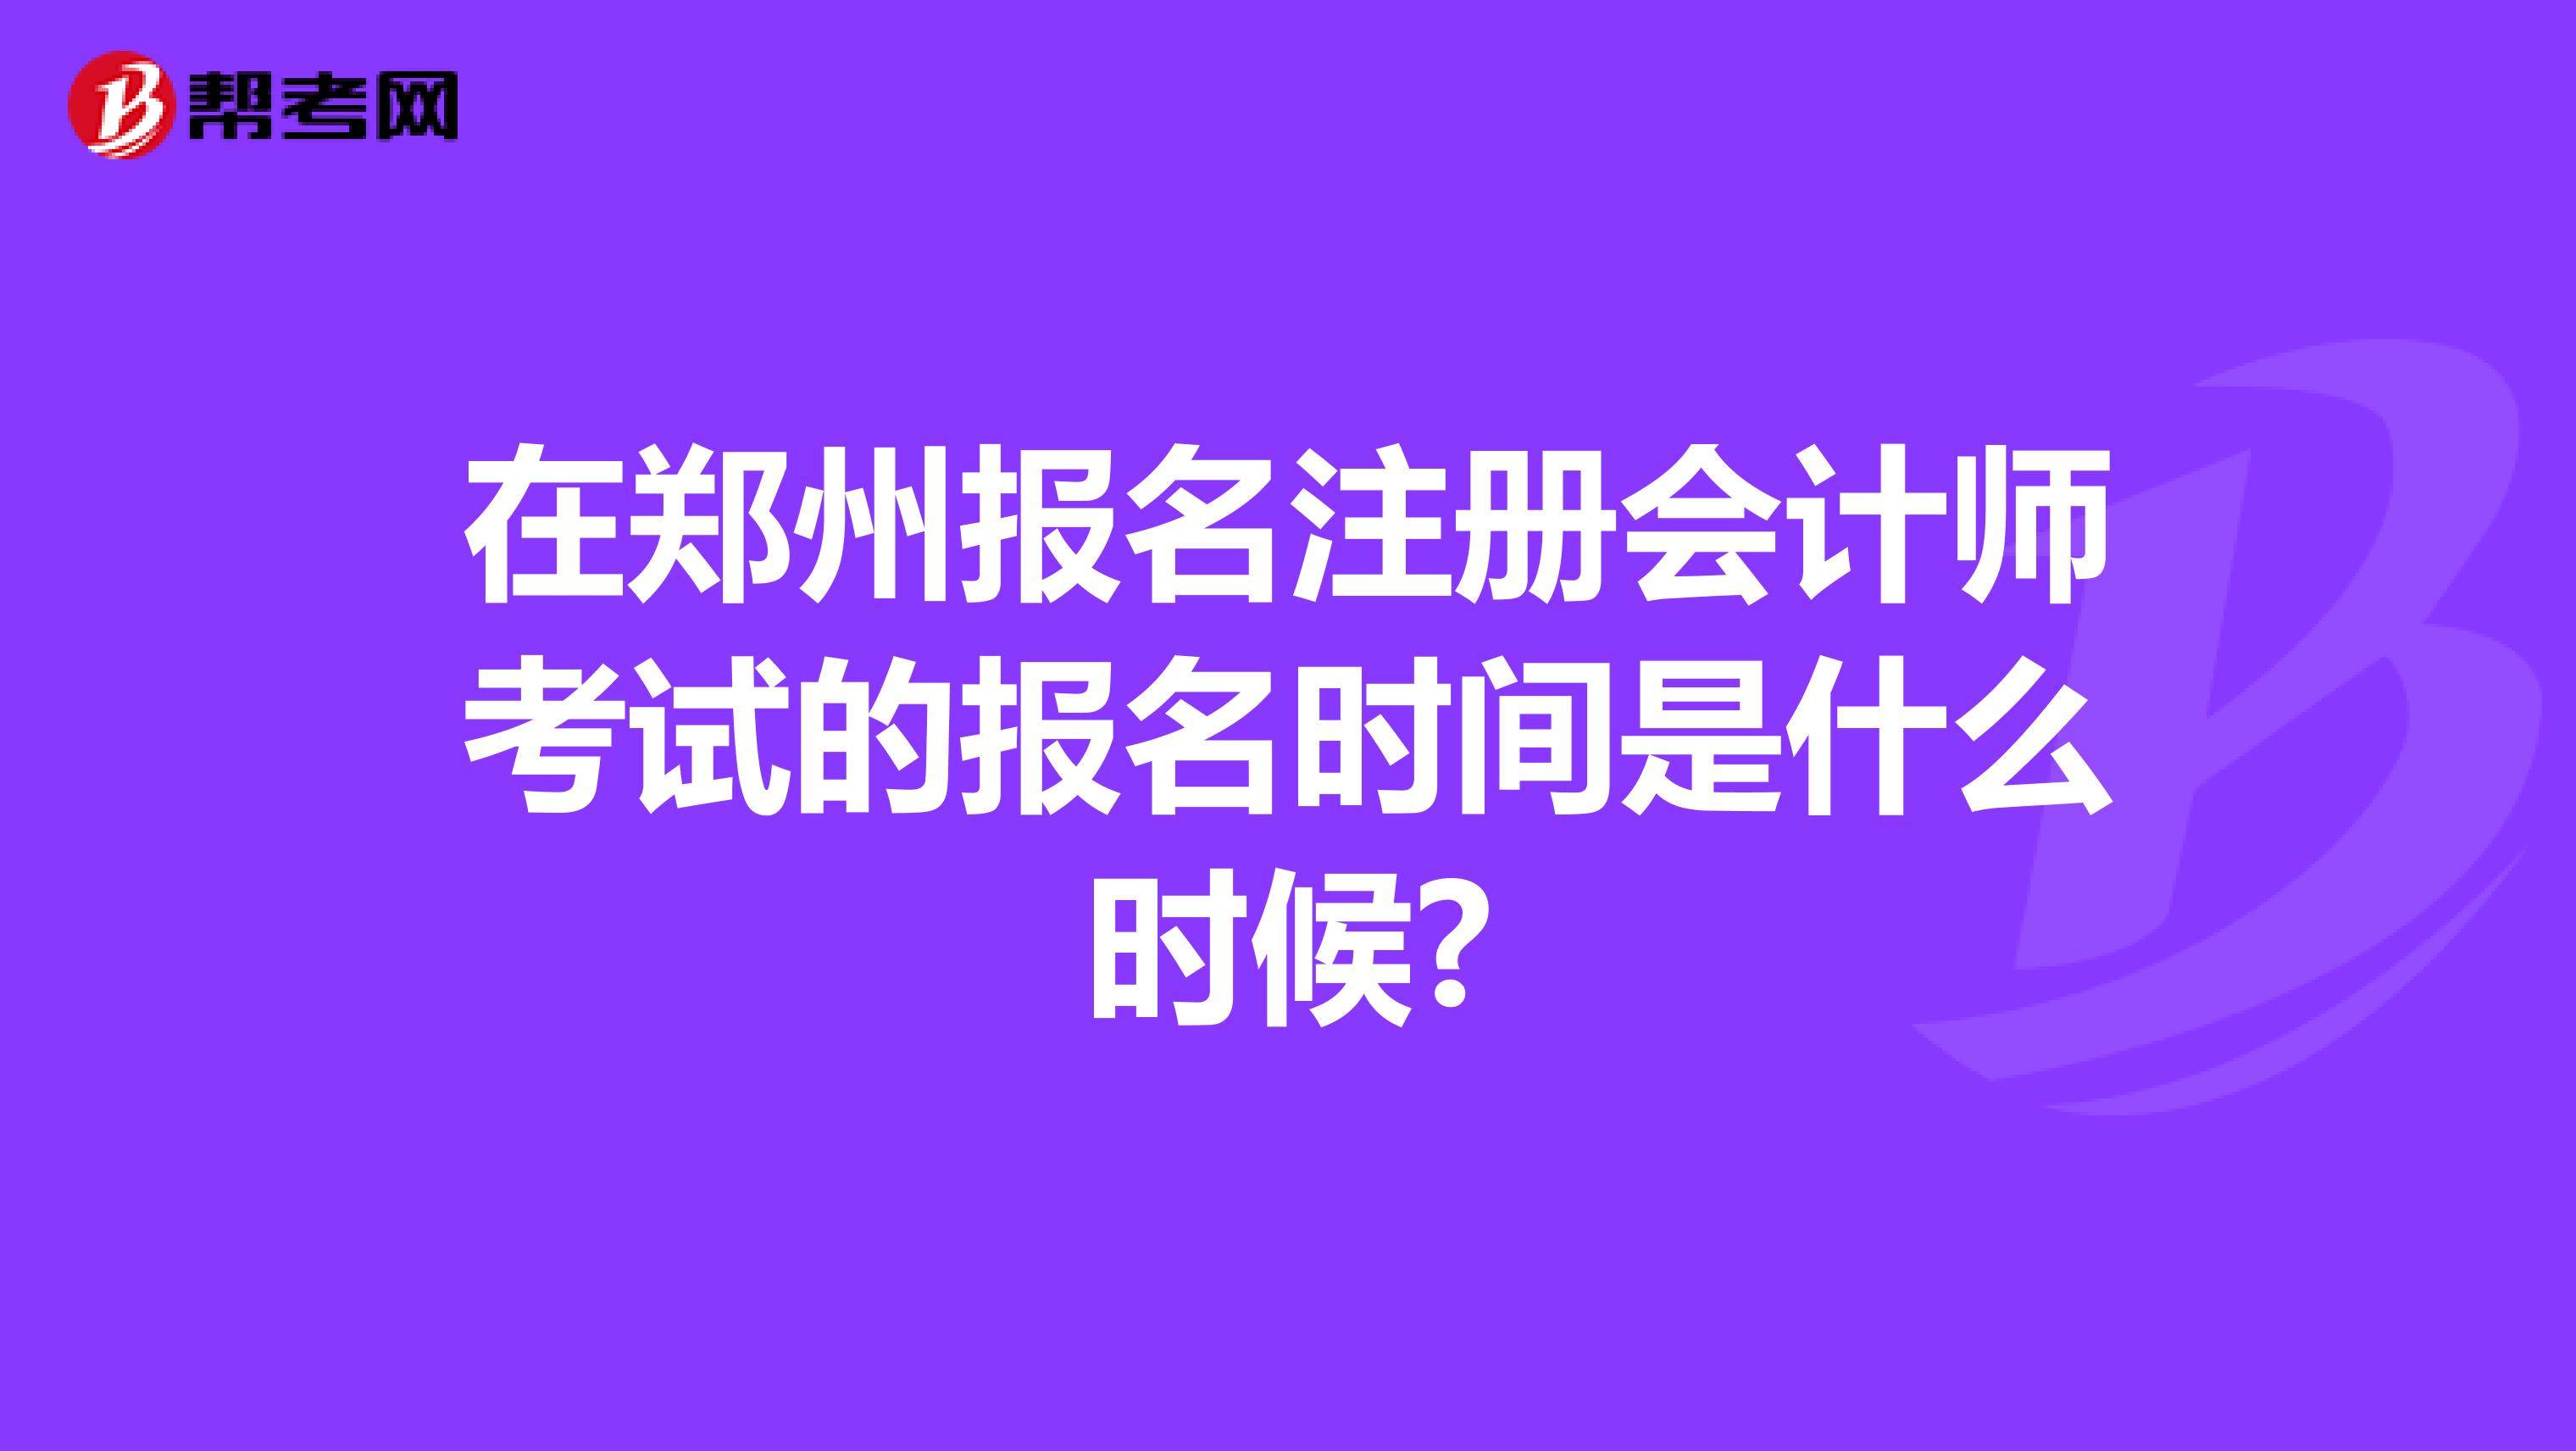 在郑州报名注册会计师考试的报名时间是什么时候?